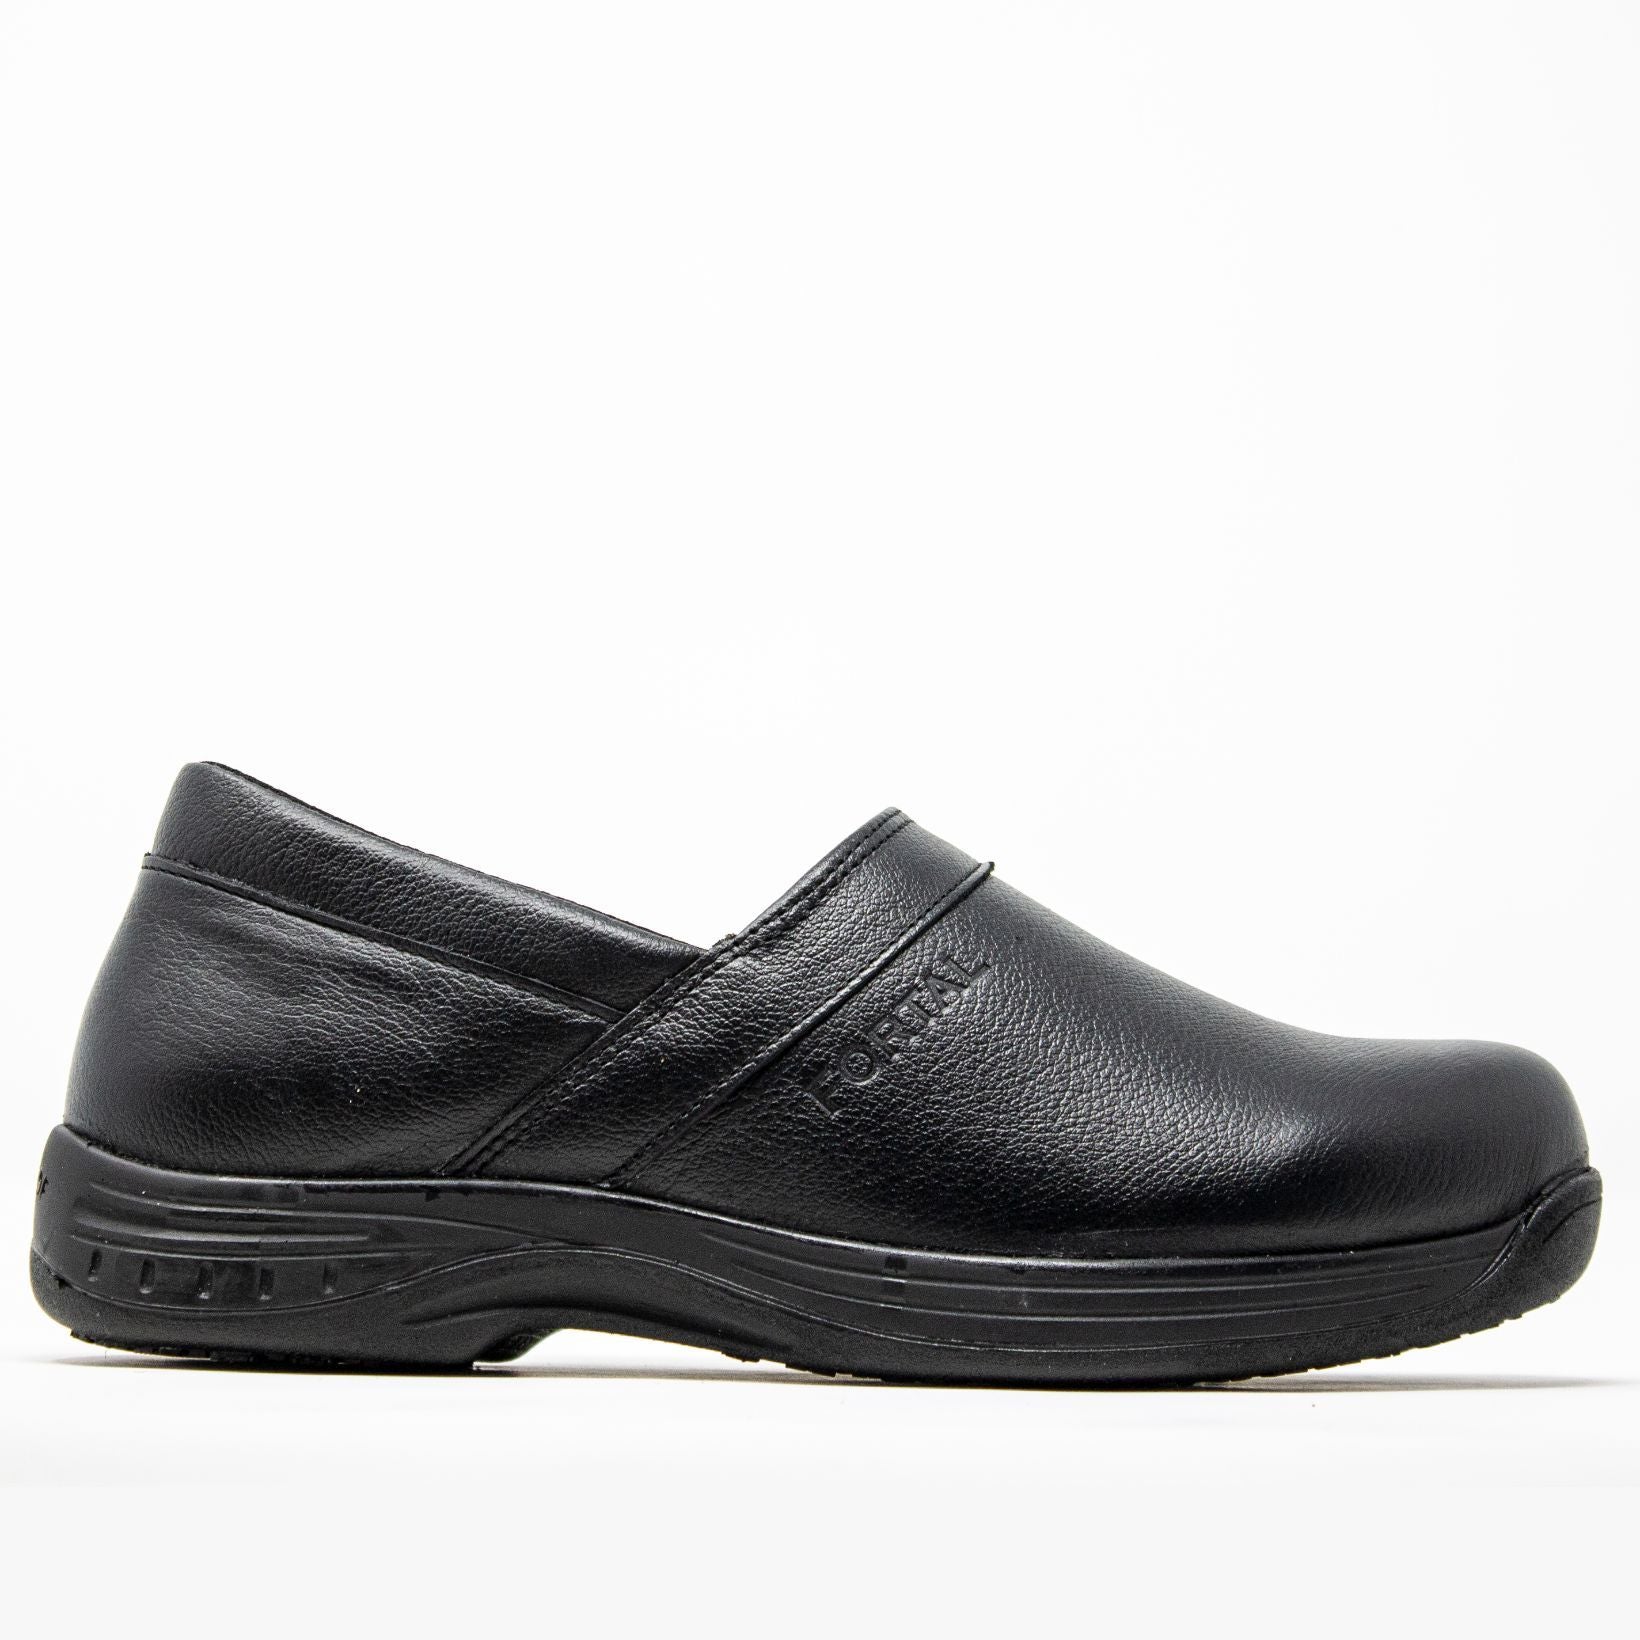 Slip Resistant Shoes for Women & Men